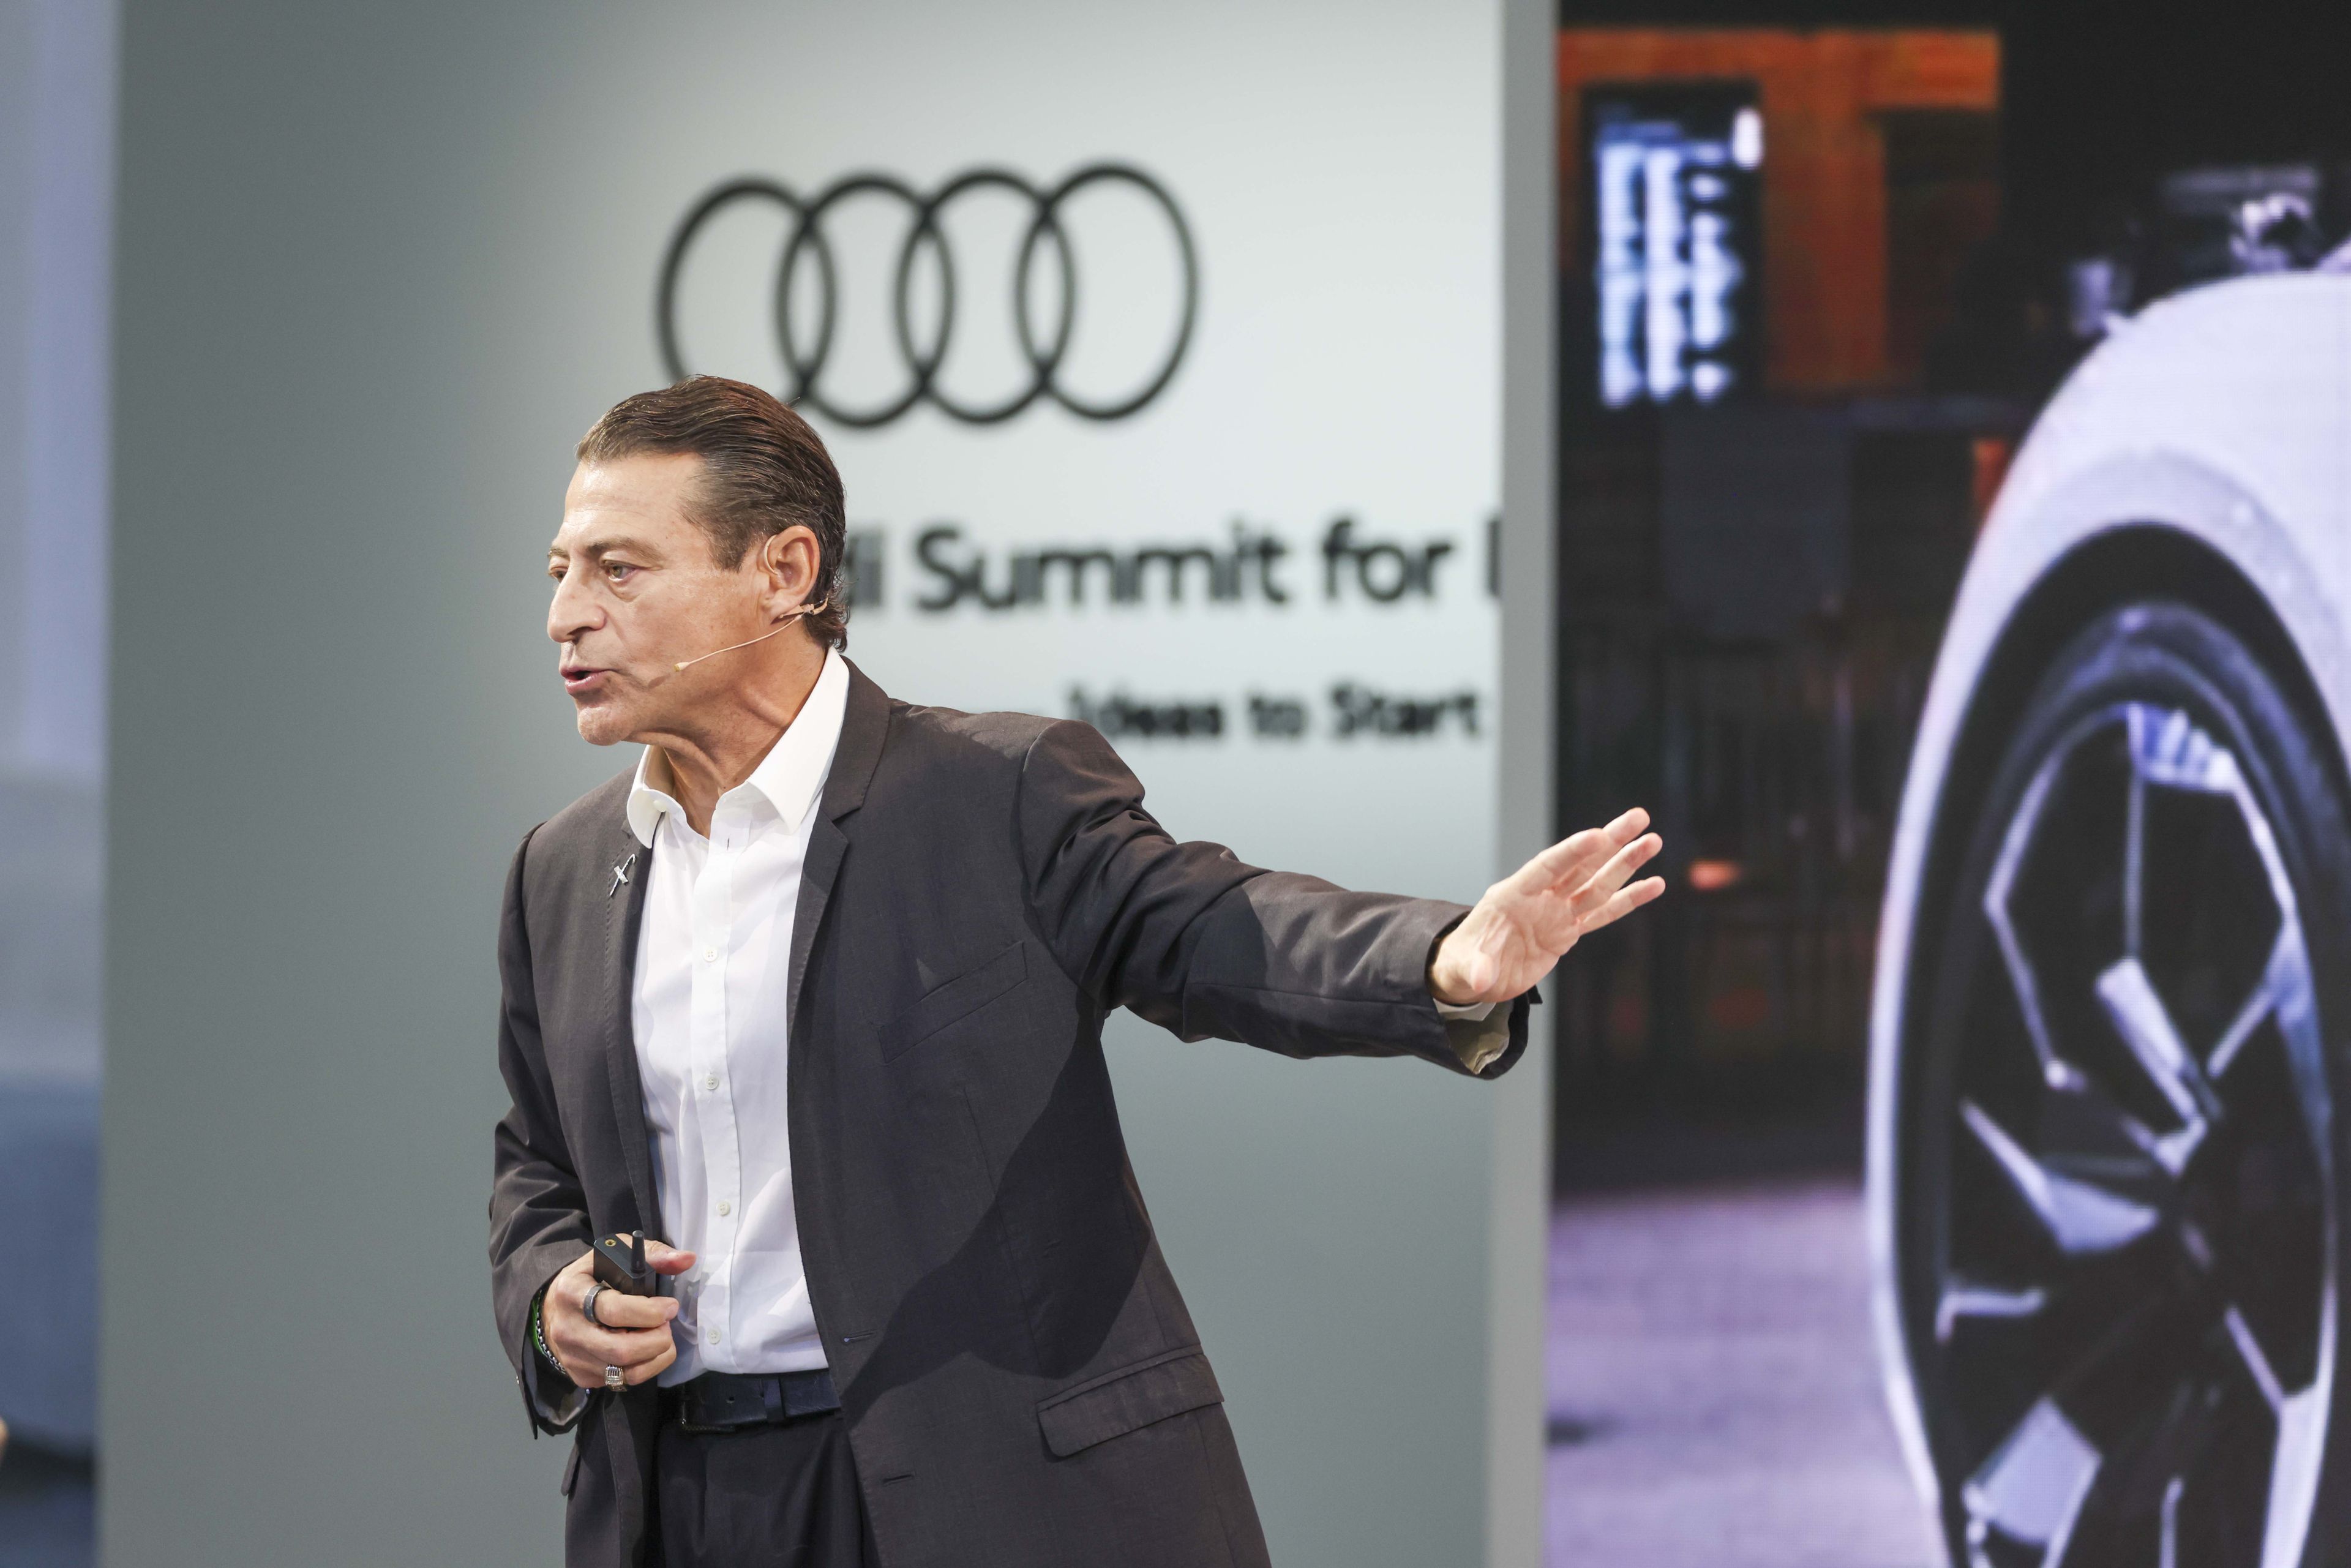 Peter H. Diamandis, uno de los 50 líderes más importantes del mundo, durante su ponencia en el Audi Summit for Progress celebrado en Madrid.